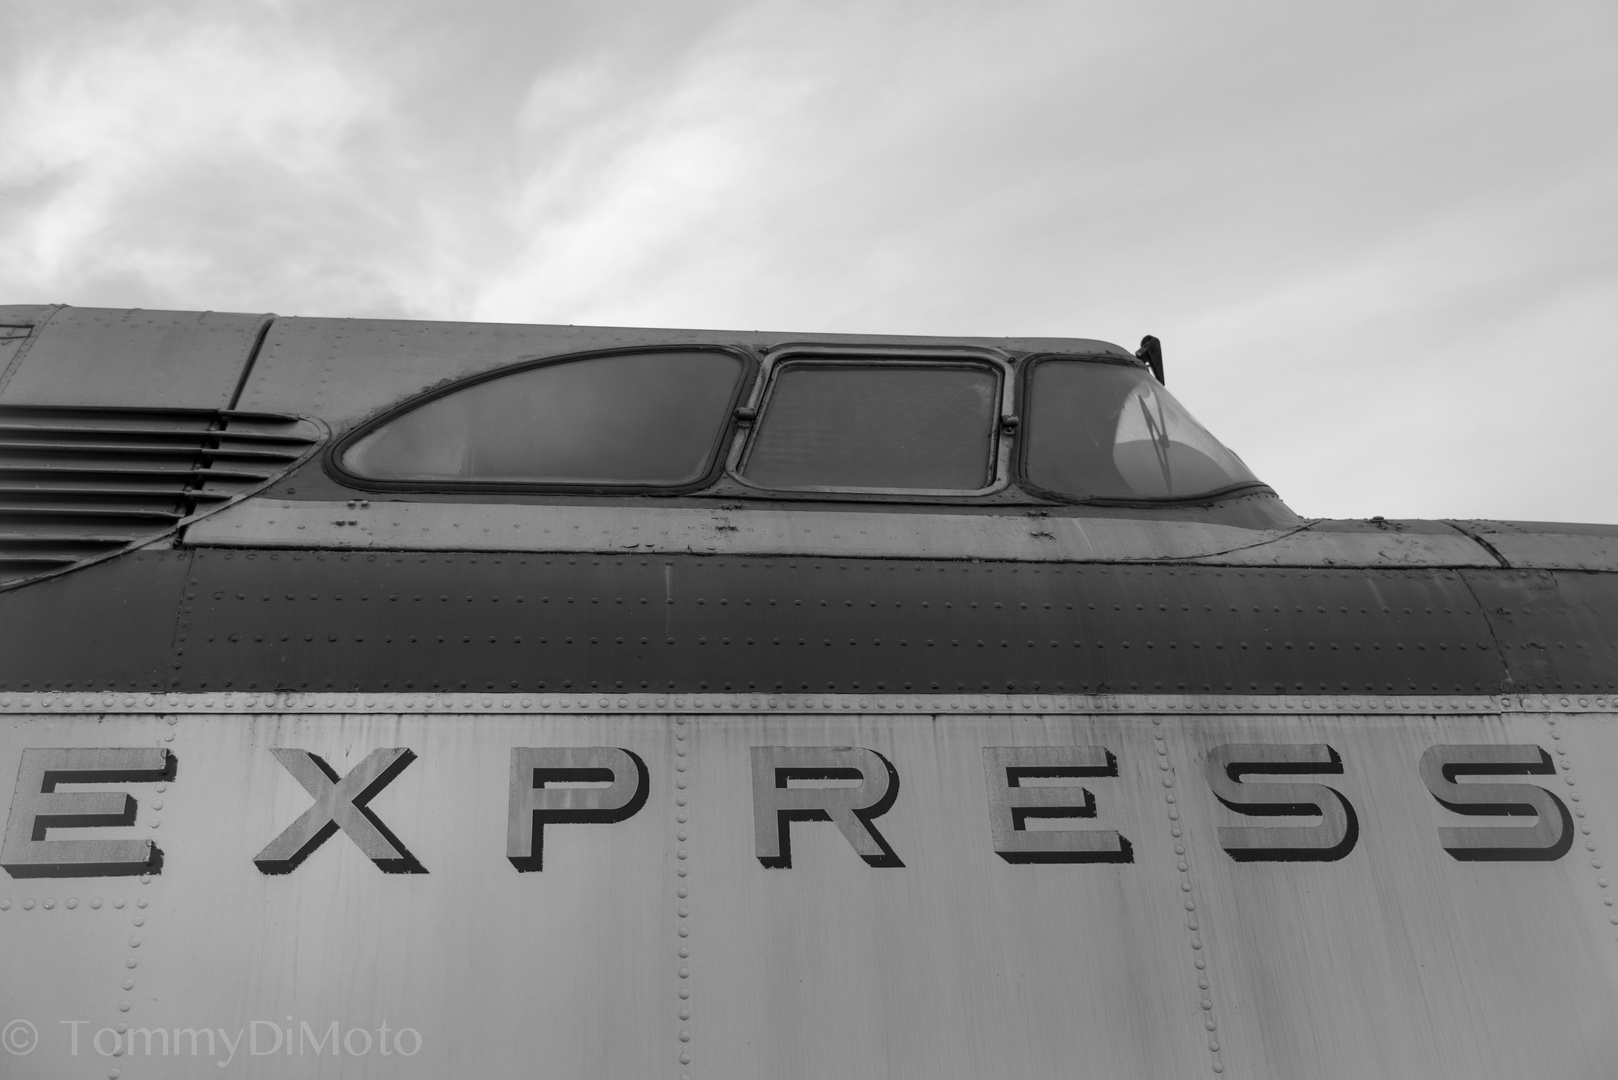 Ex- Express